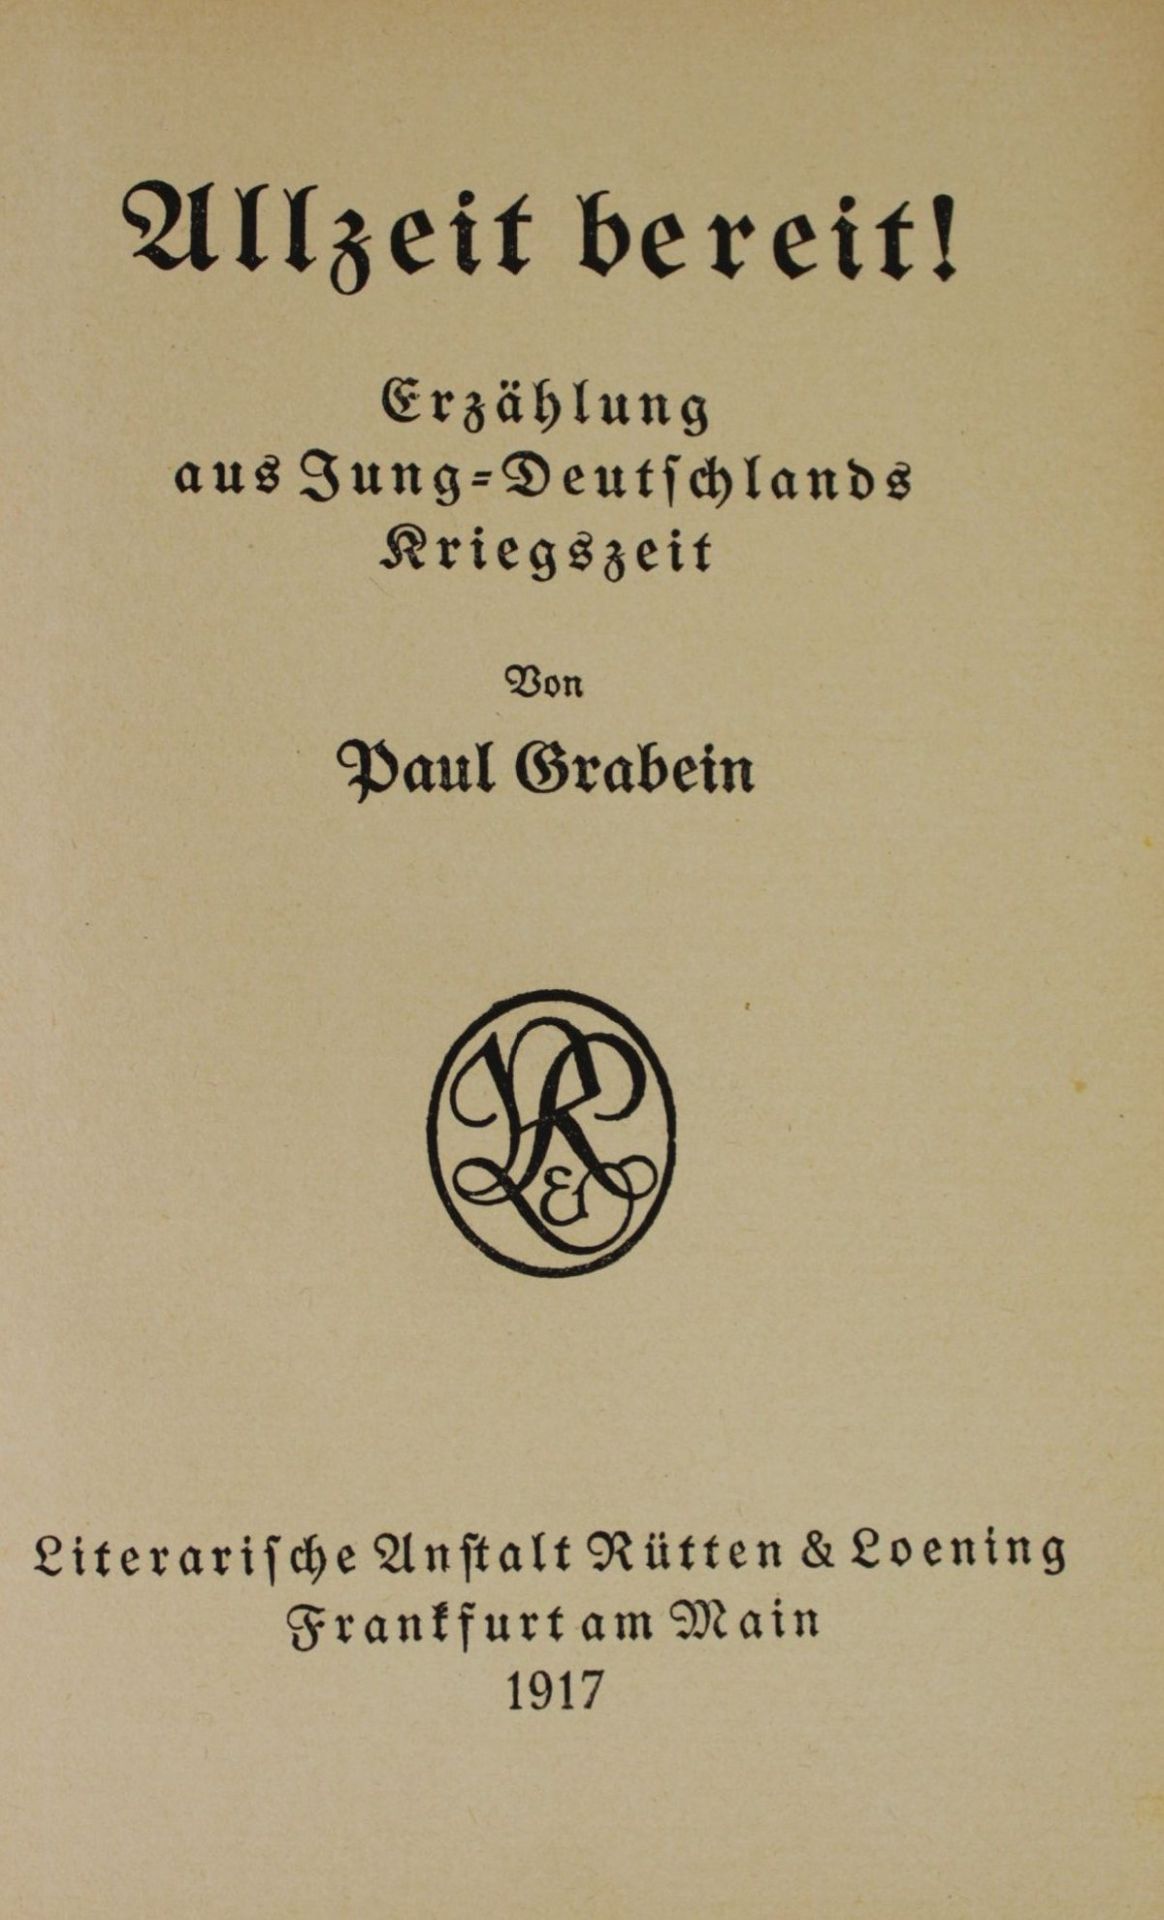 Paul Grabein, Allzeit bereit ! - Erzählung aus Jung-Deutschlands Kriegszeit, 1917, Alters-u. - Image 2 of 4